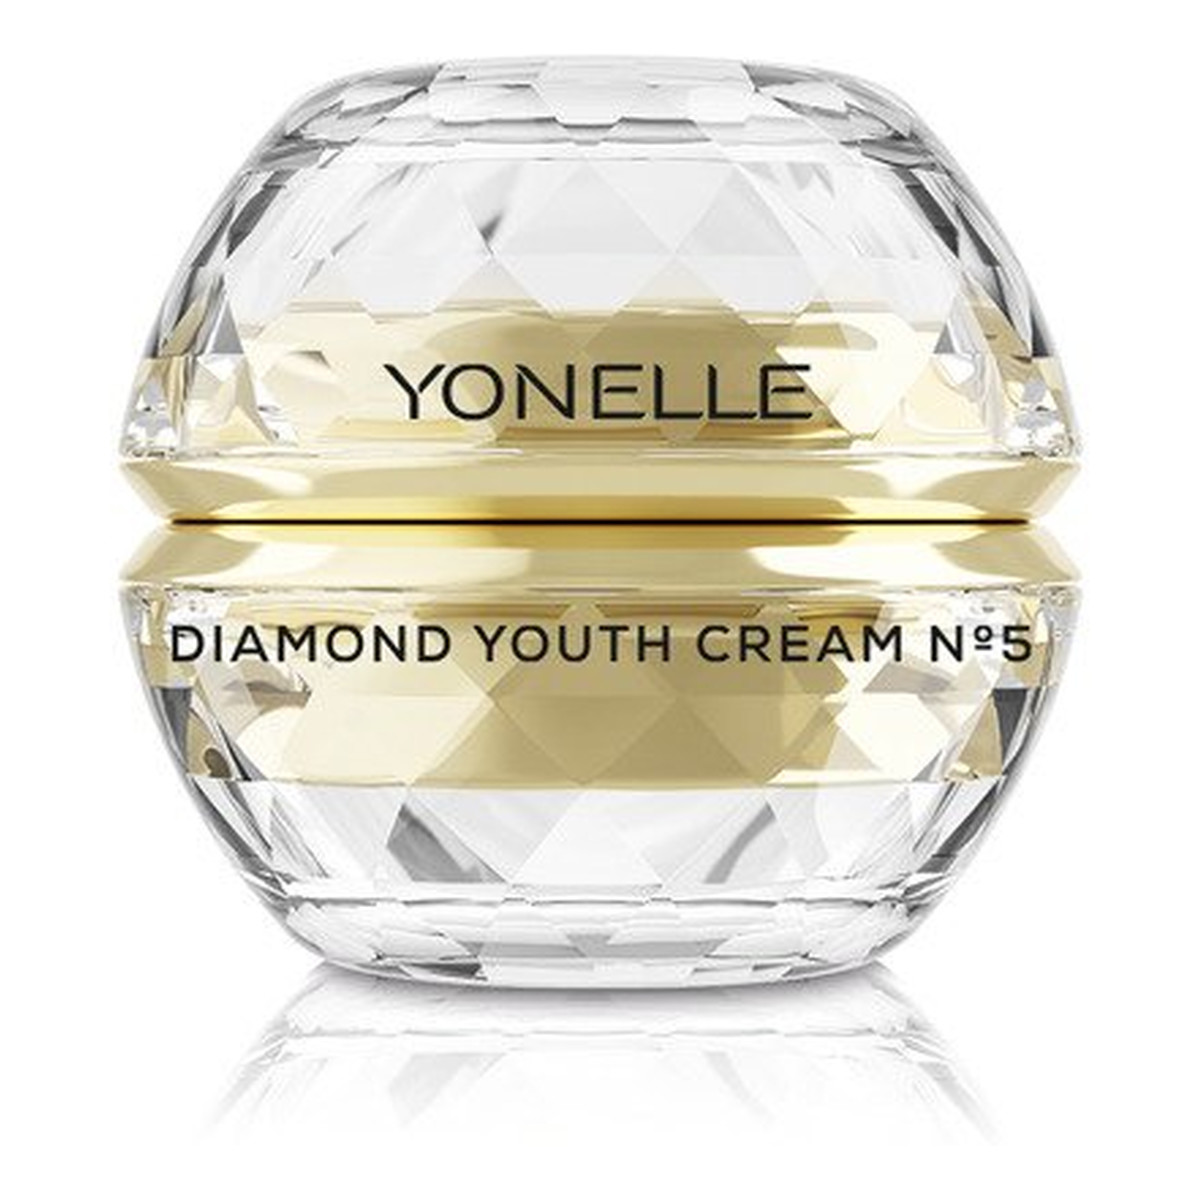 Yonelle Diamond Youth Cream N5 diamentowy krem młodości do twarzy i ust 50ml